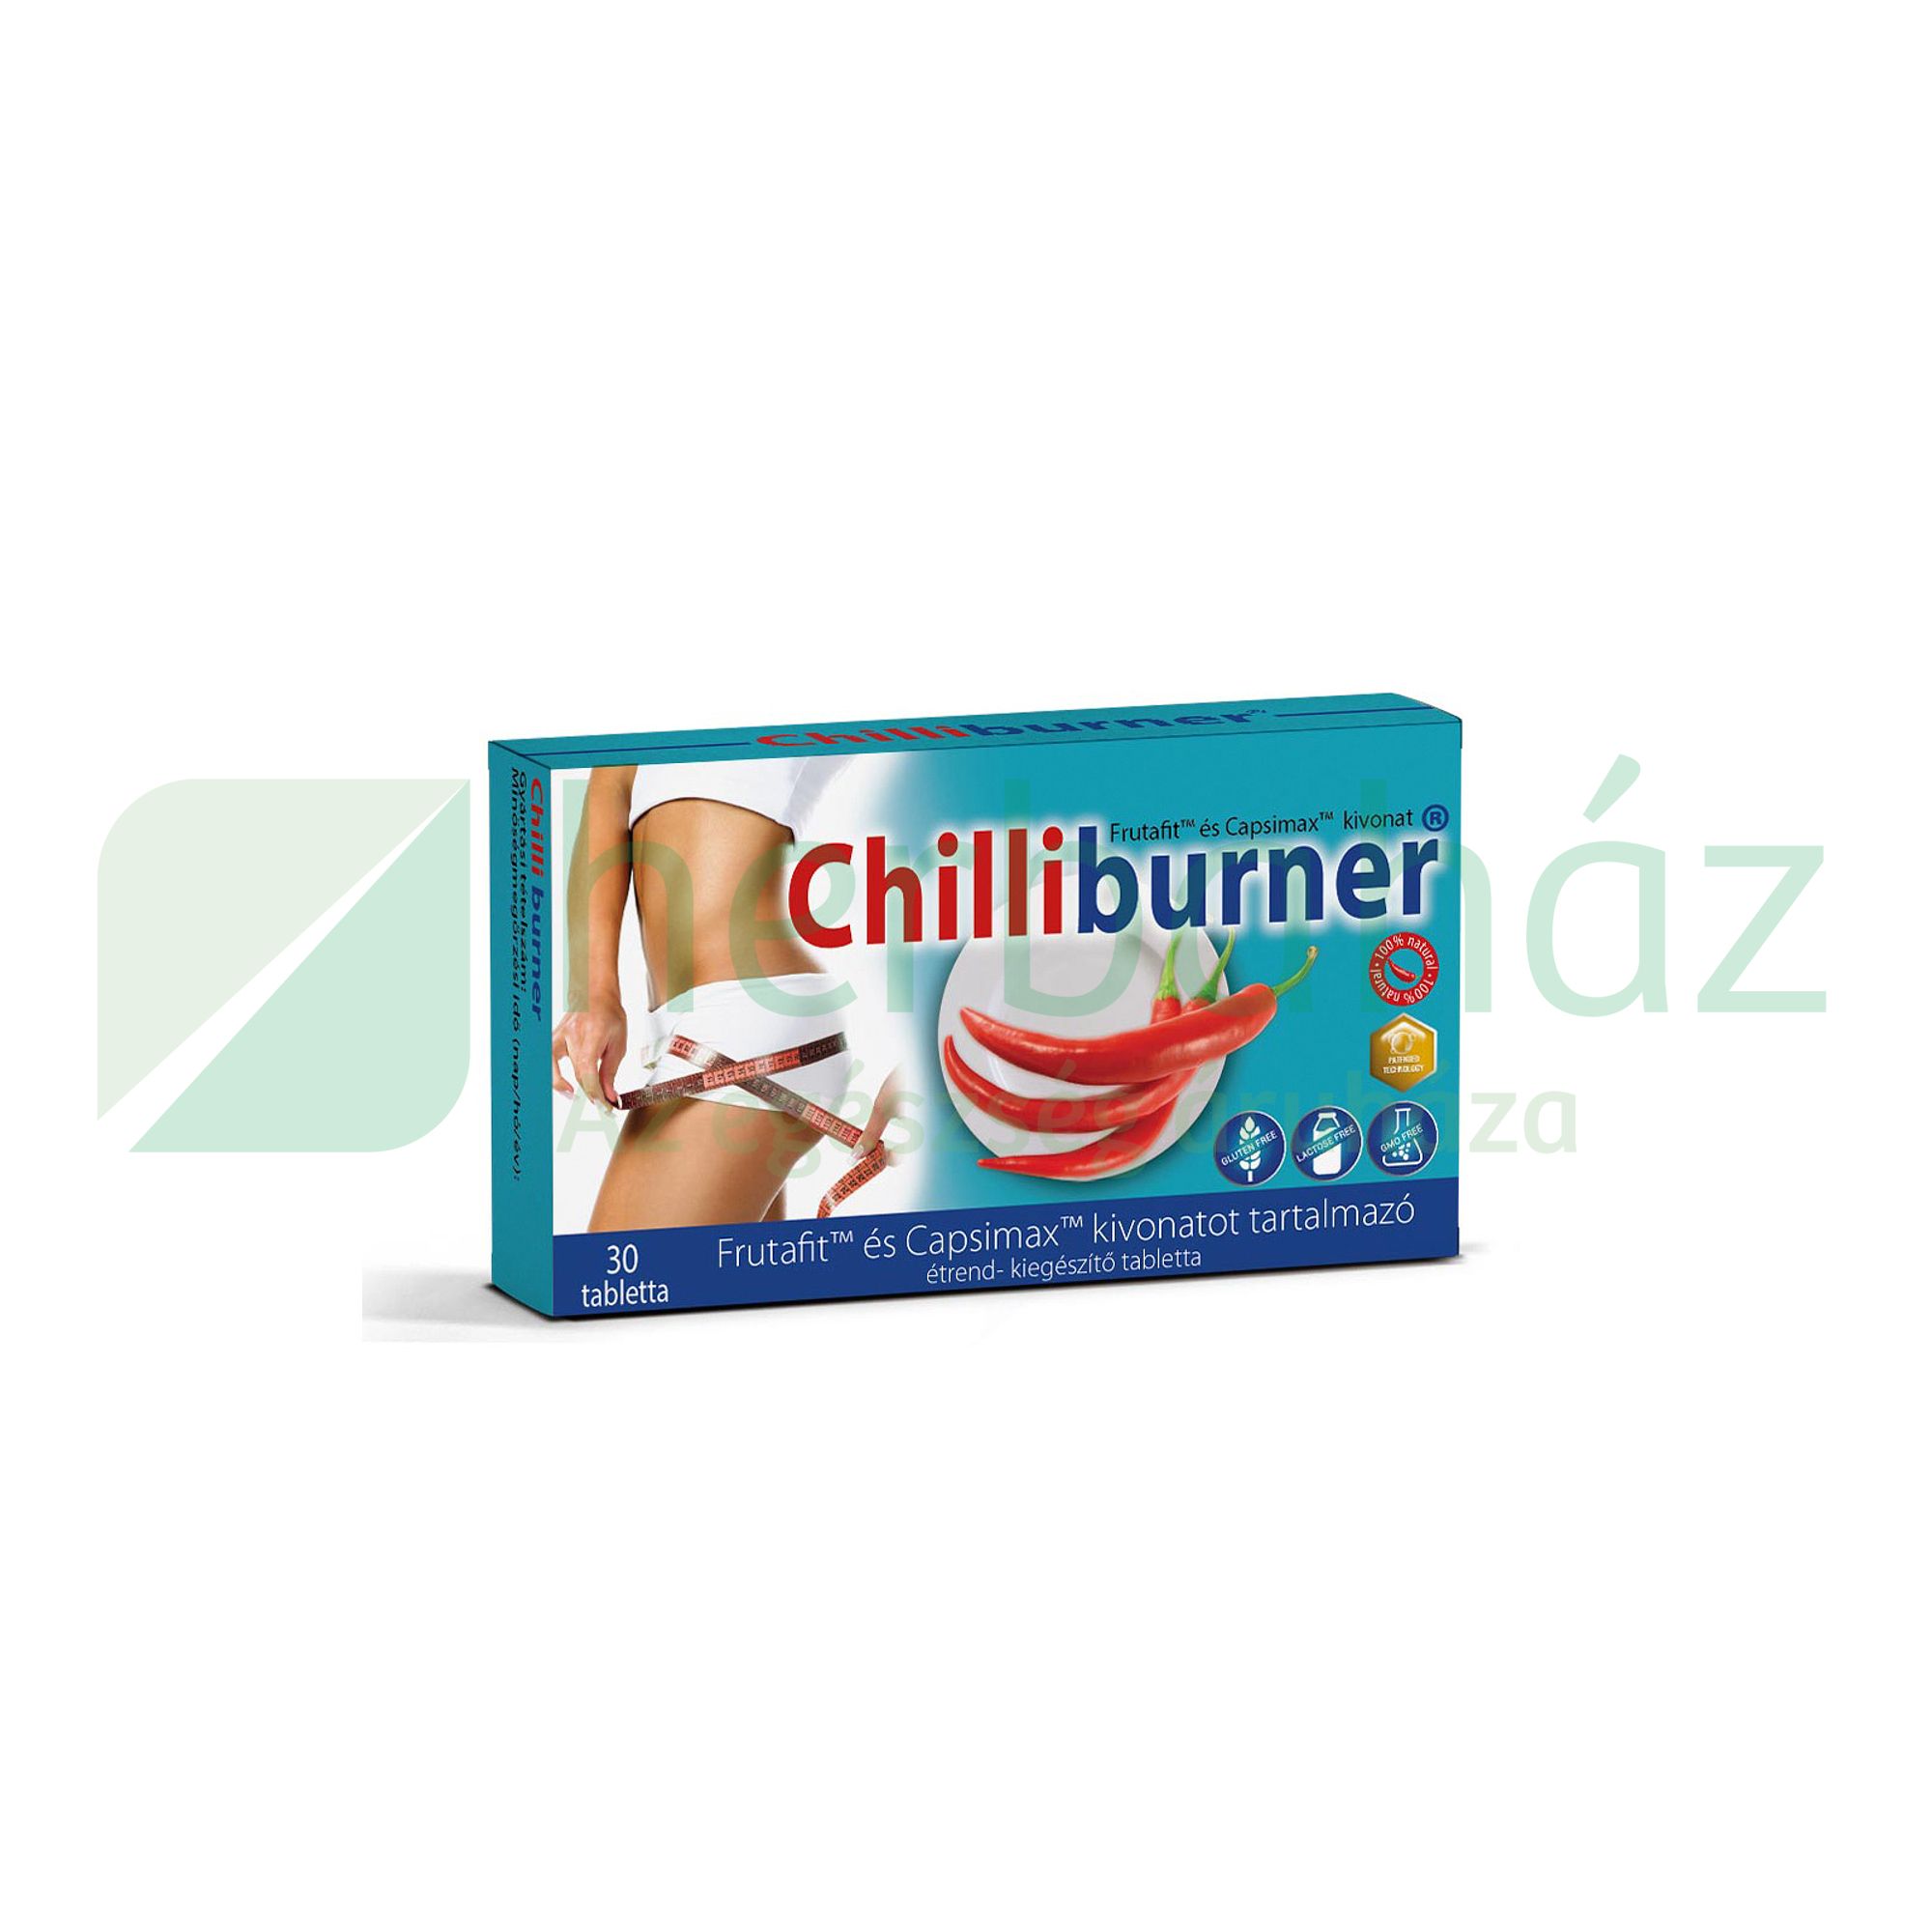 Zsírégető Chili tabletta - szabadalommal, egy tablettában 15db chilipaprika kapszaicinnel